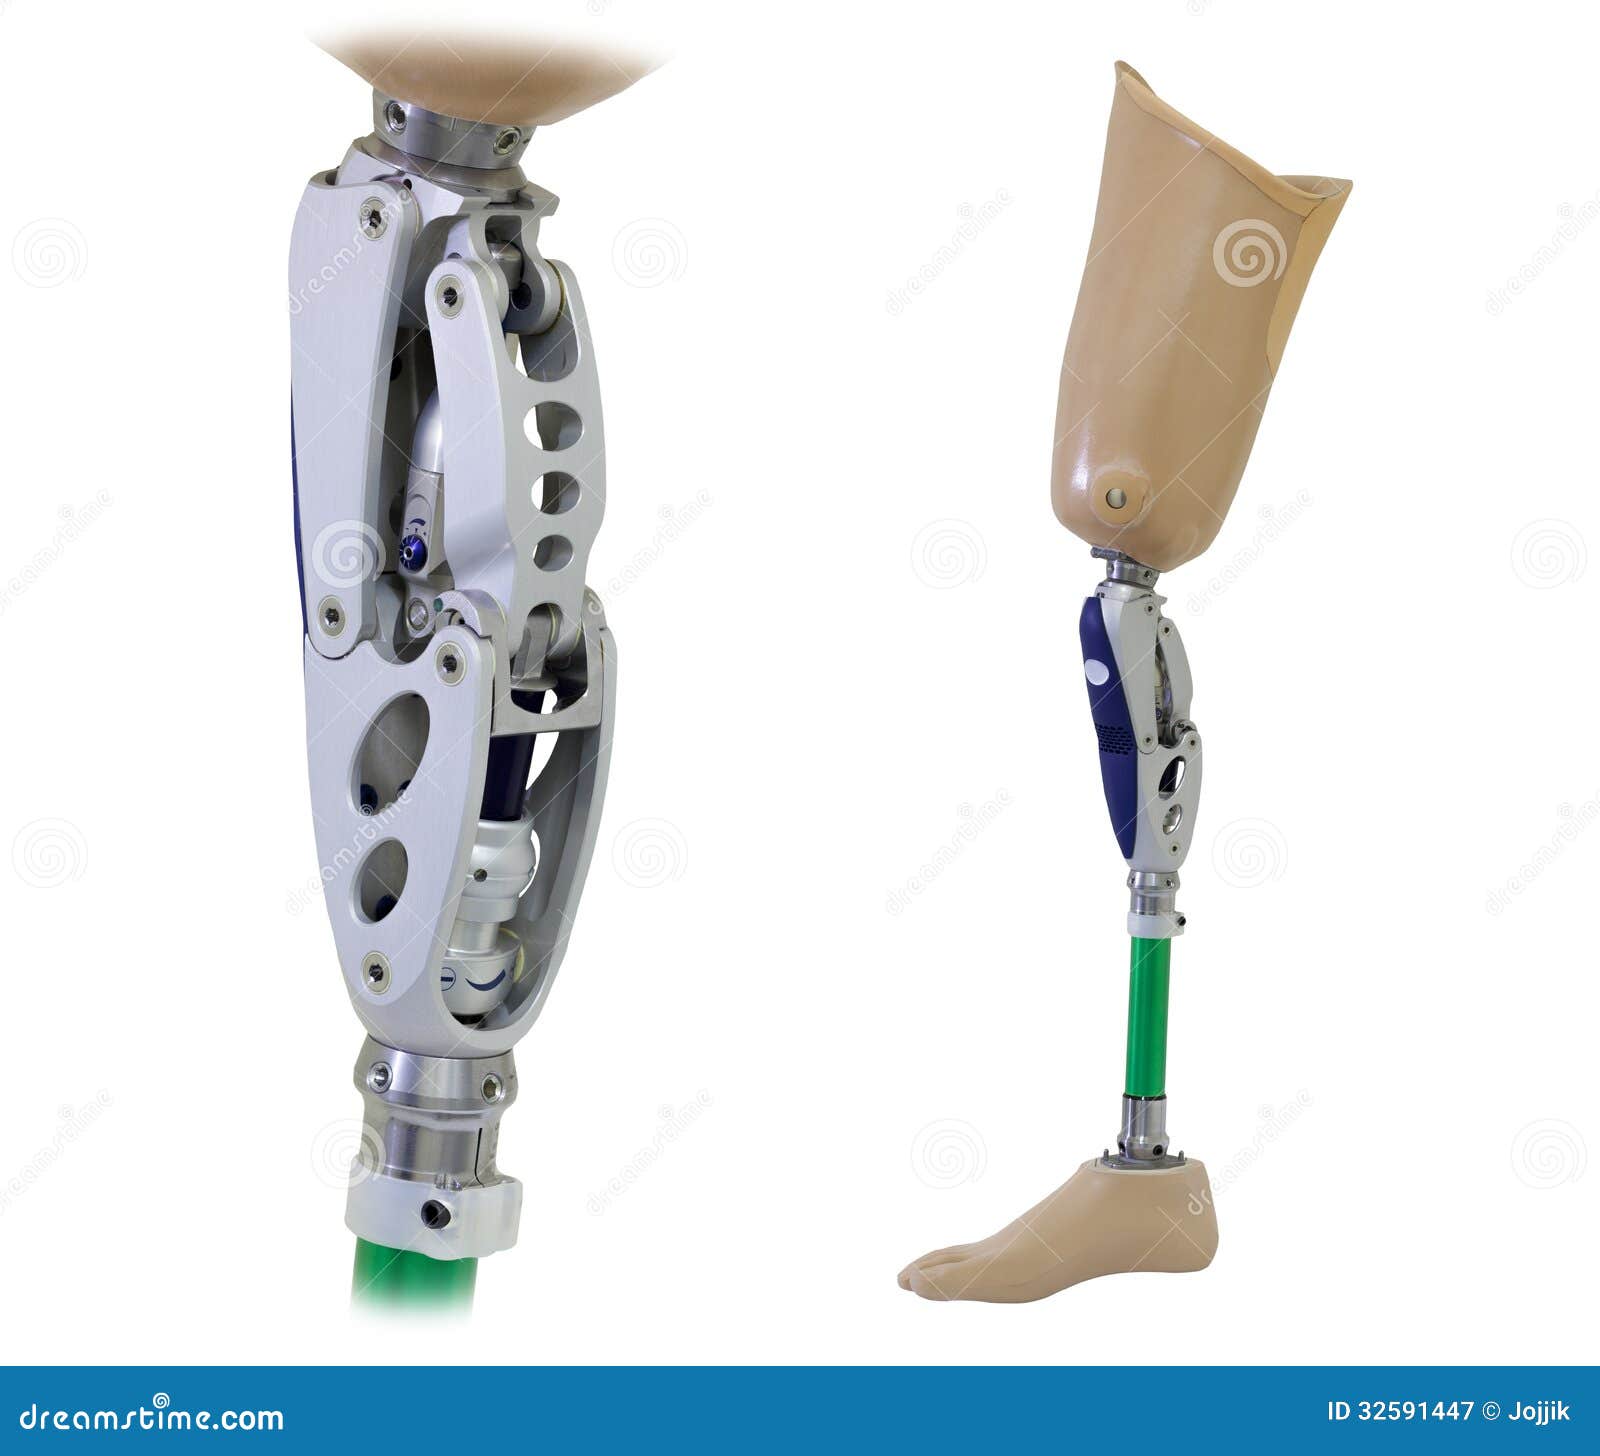 prosthetic leg knee mechanism isolated white 32591447